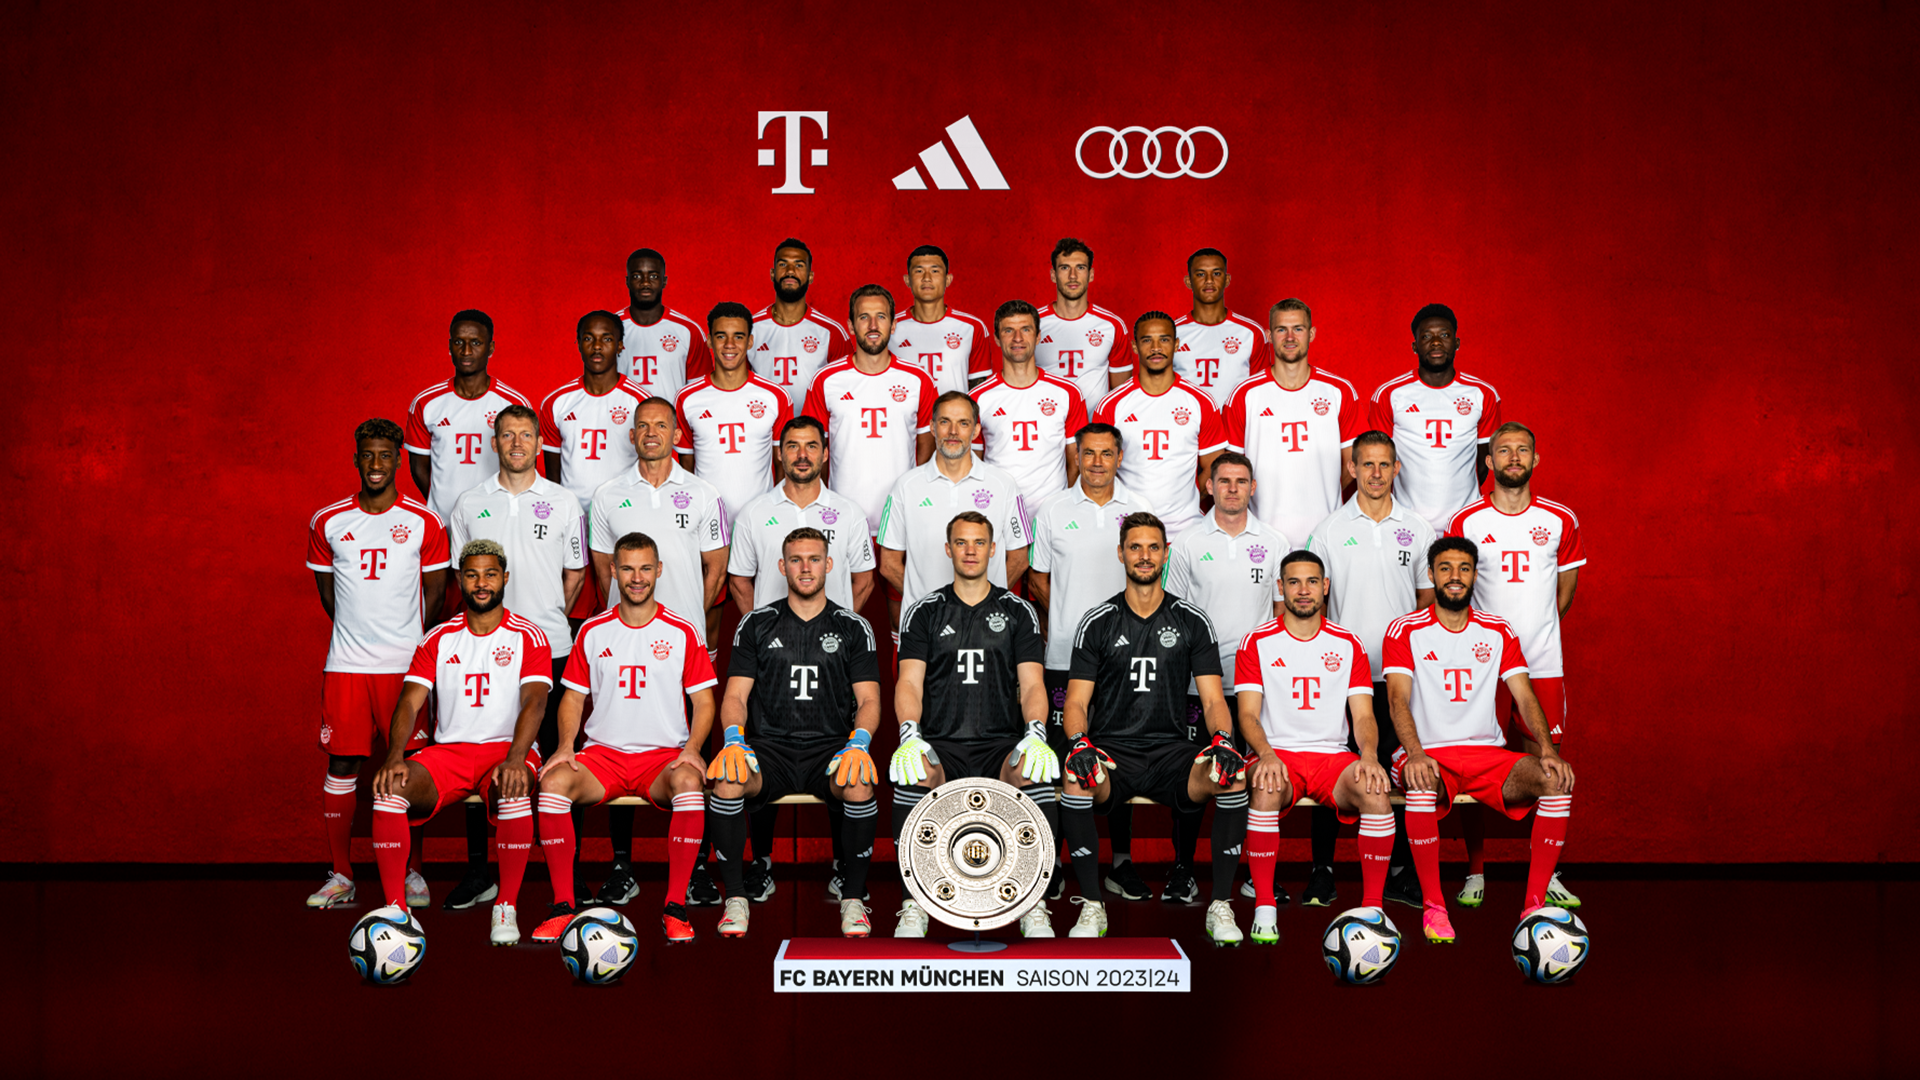 Đội hình cầu thủ Bayern mùa giải 2023 cập nhật chi tiết nhất.